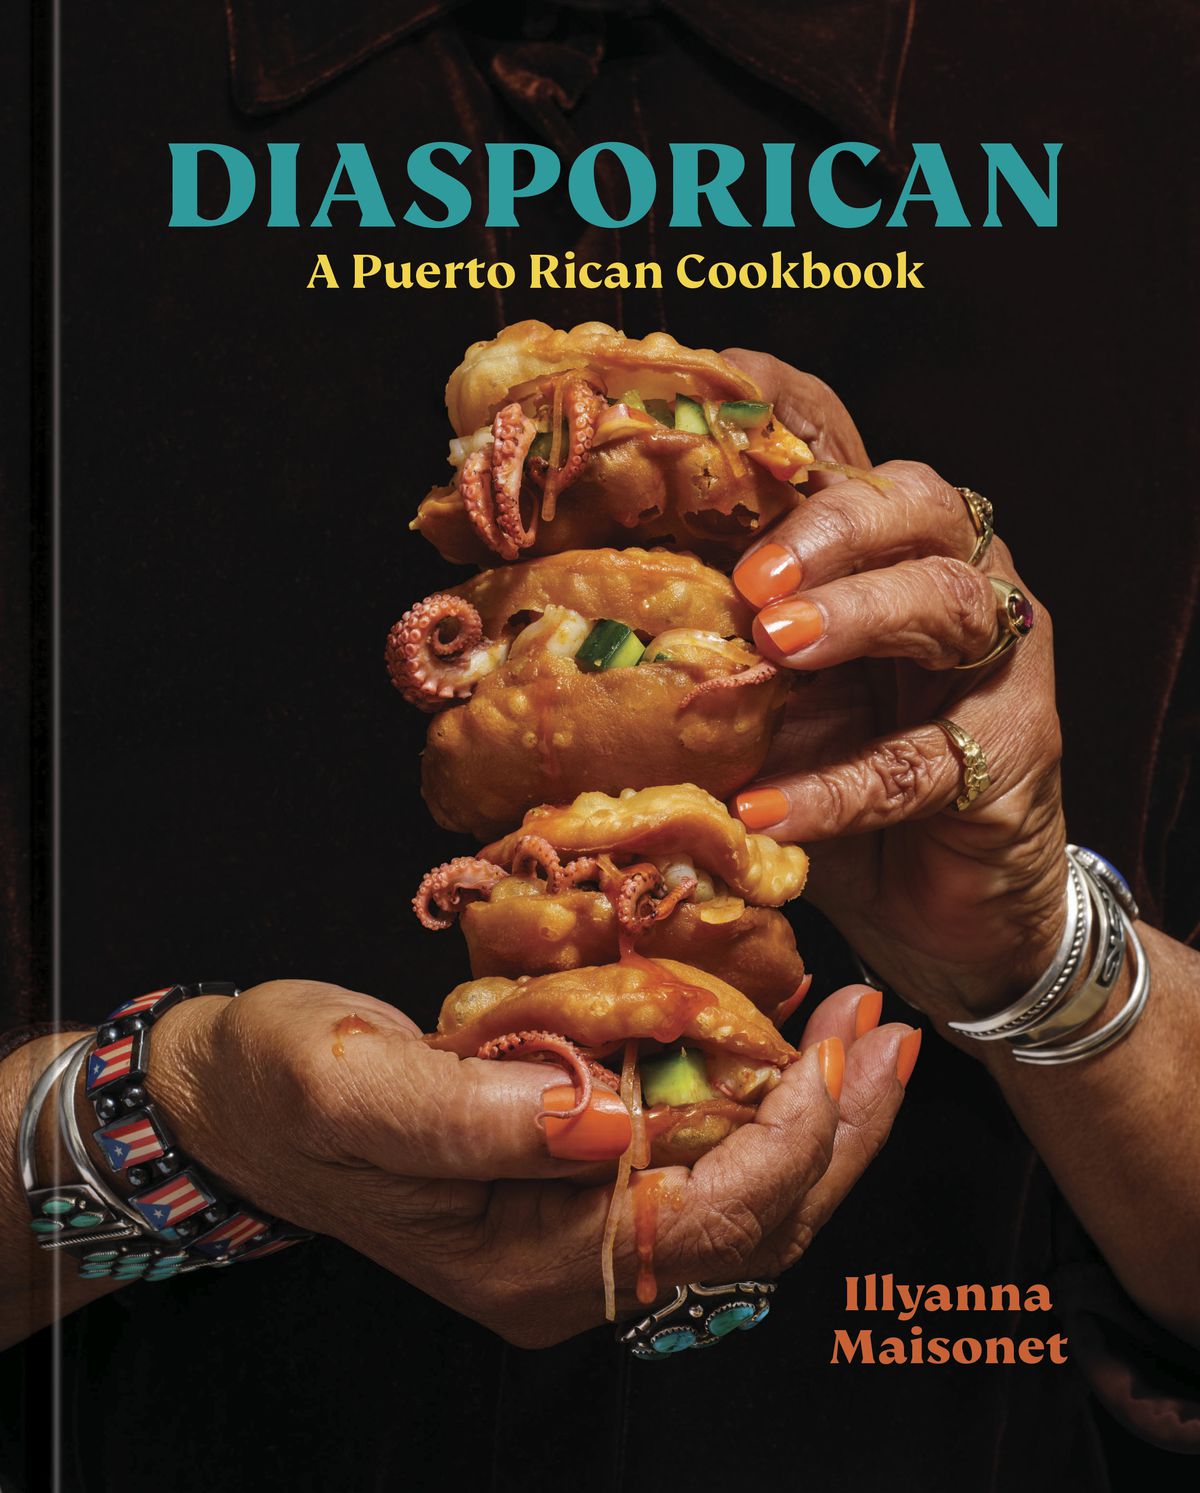 Diasporicaans omslag toont de handen van een vrouw die een stapel voedsel vasthoudt